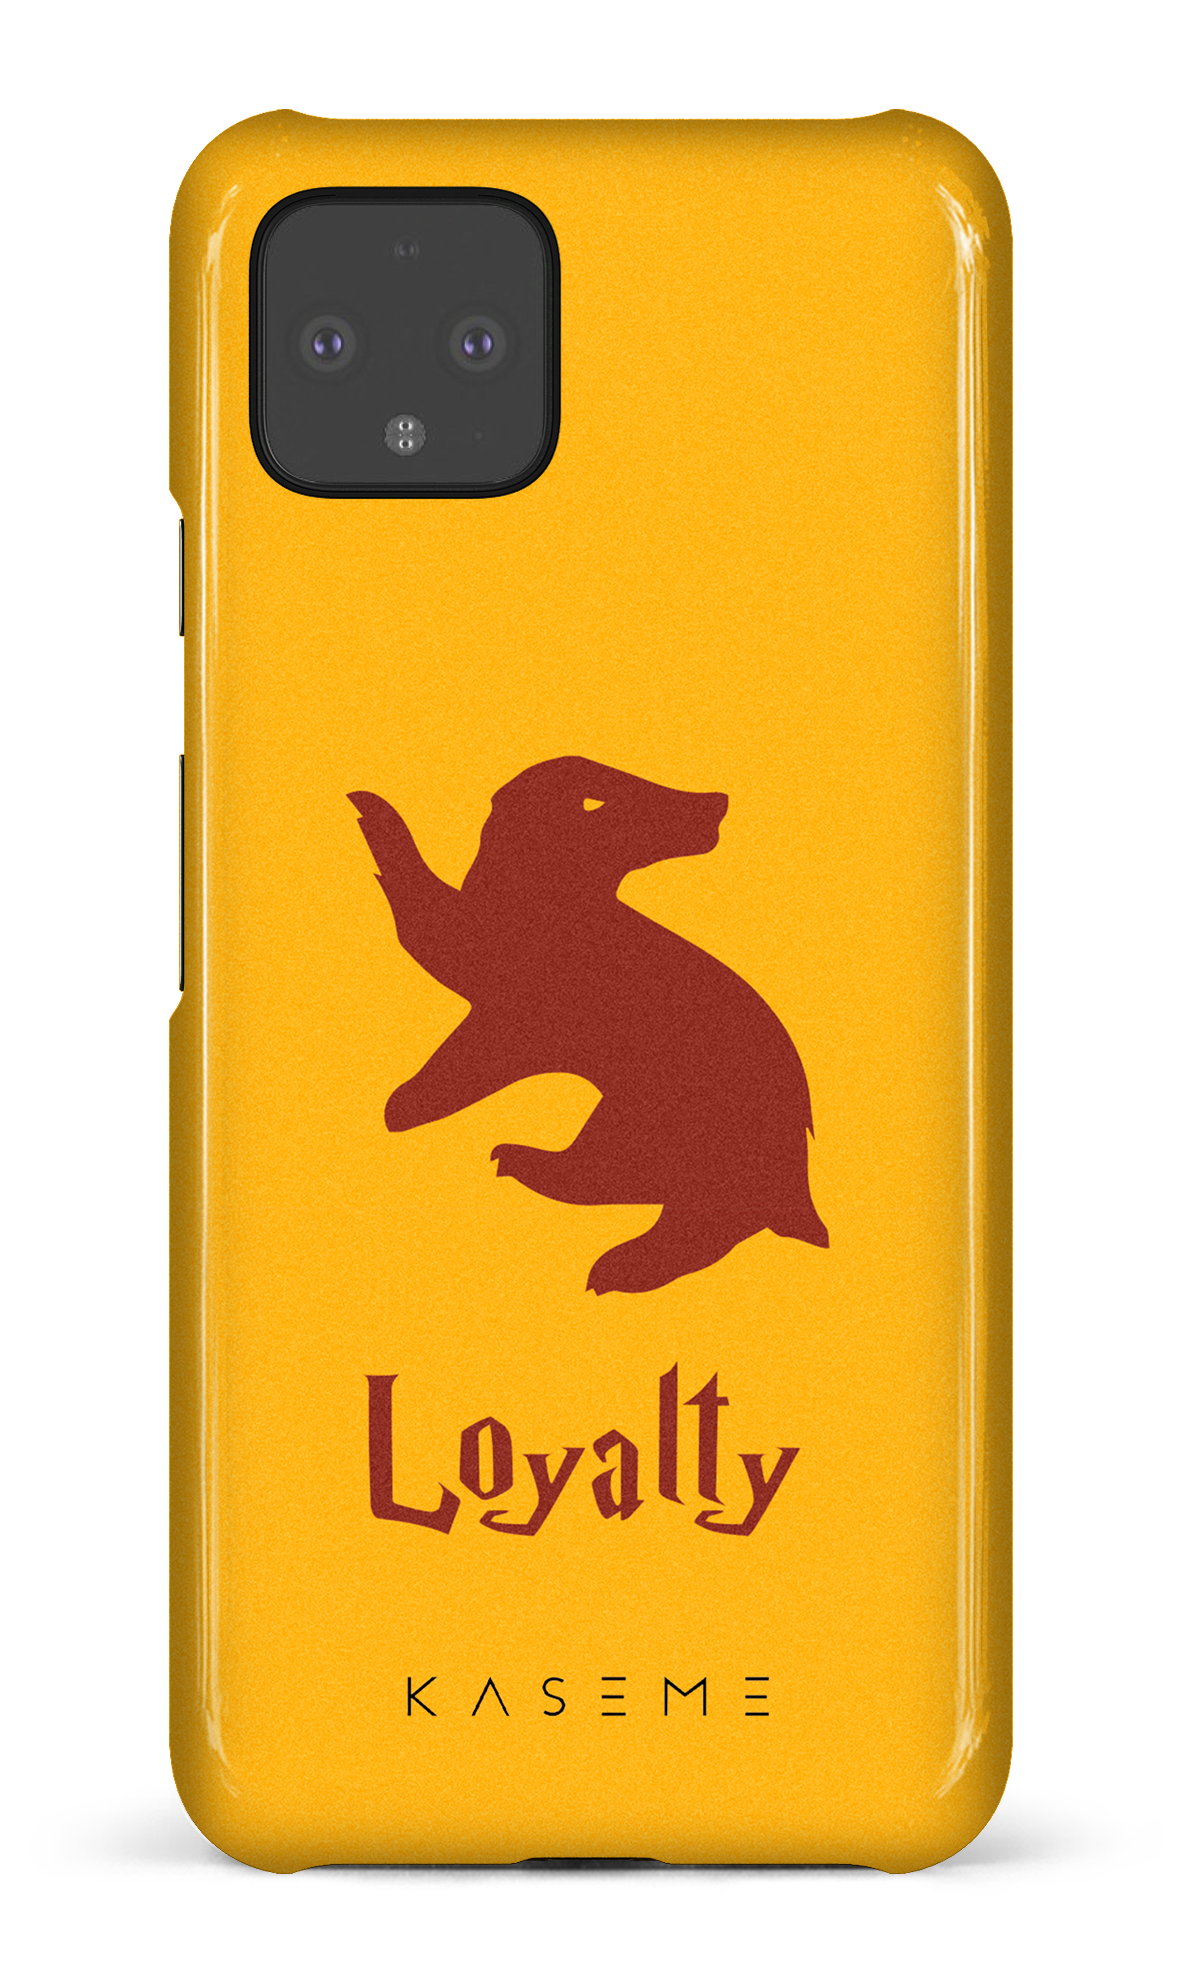 Loyalty - Google Pixel 4